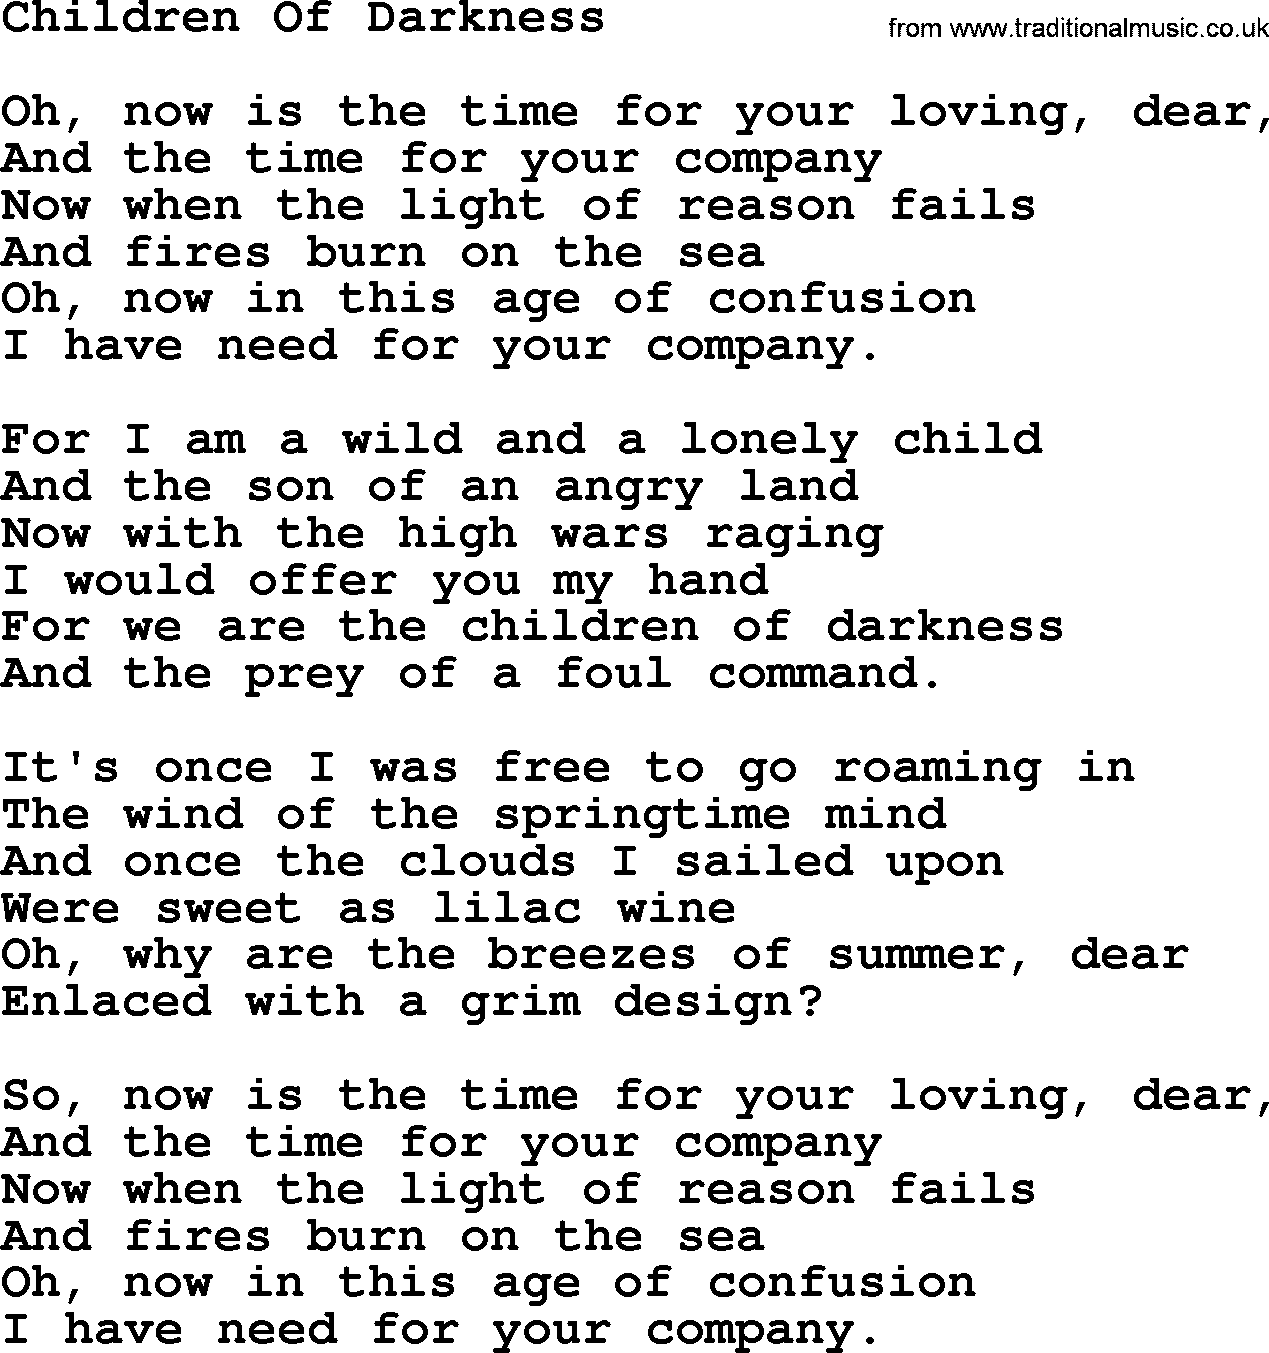 Joan Baez song Children Of Darkness, lyrics